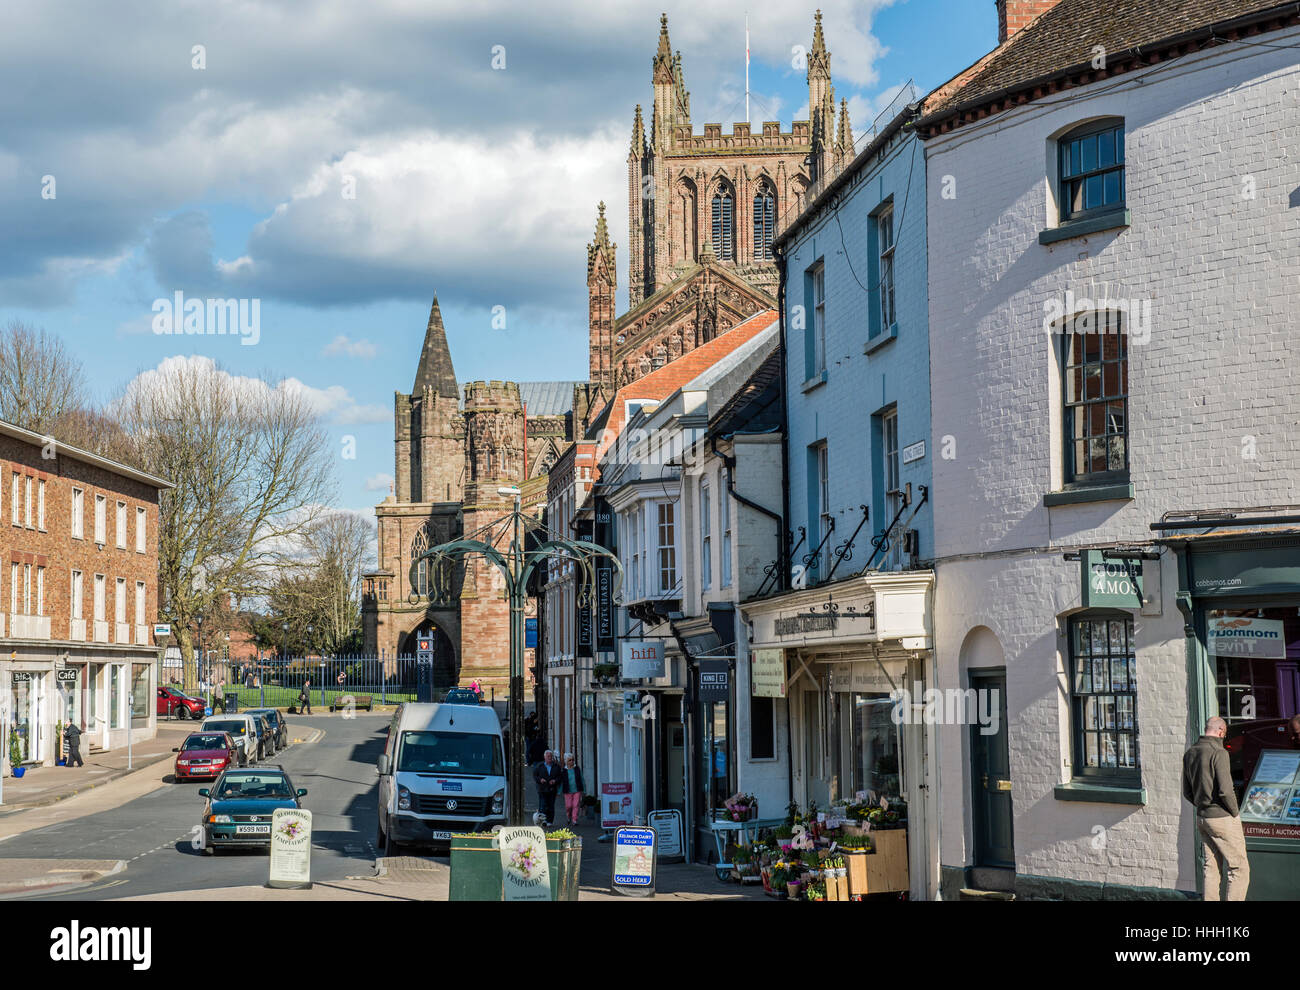 King Street, en la ciudad de Hereford, Herefordshire, Inglaterra, mostrando parte de Hereford Cathedral Foto de stock